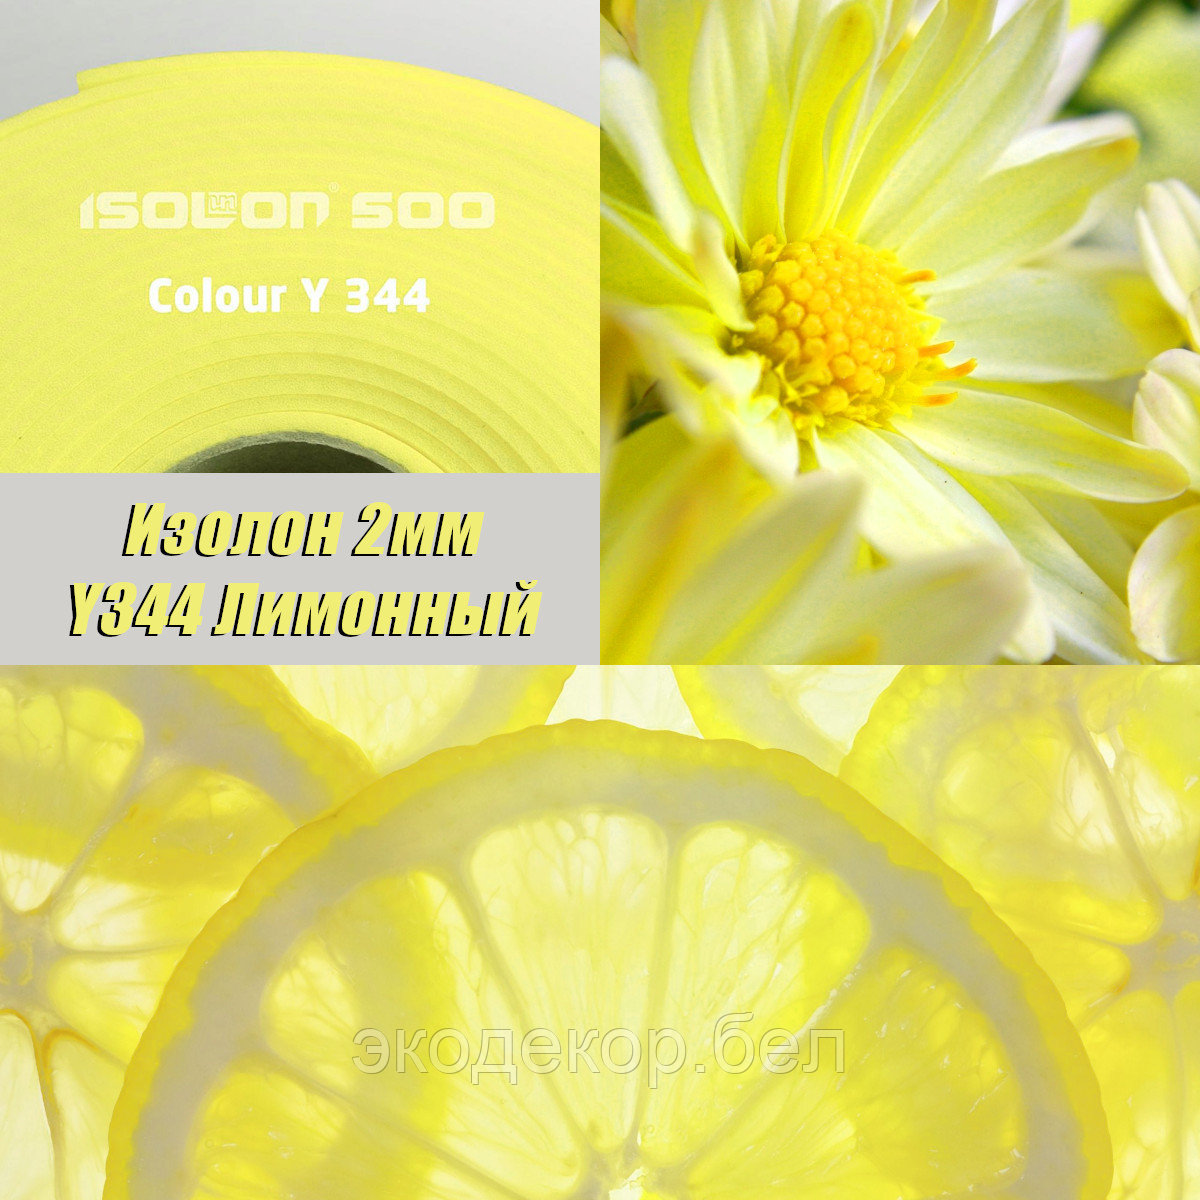 Isolon 500 (Изолон) 0,75м. Y344 Лимонный, 2мм